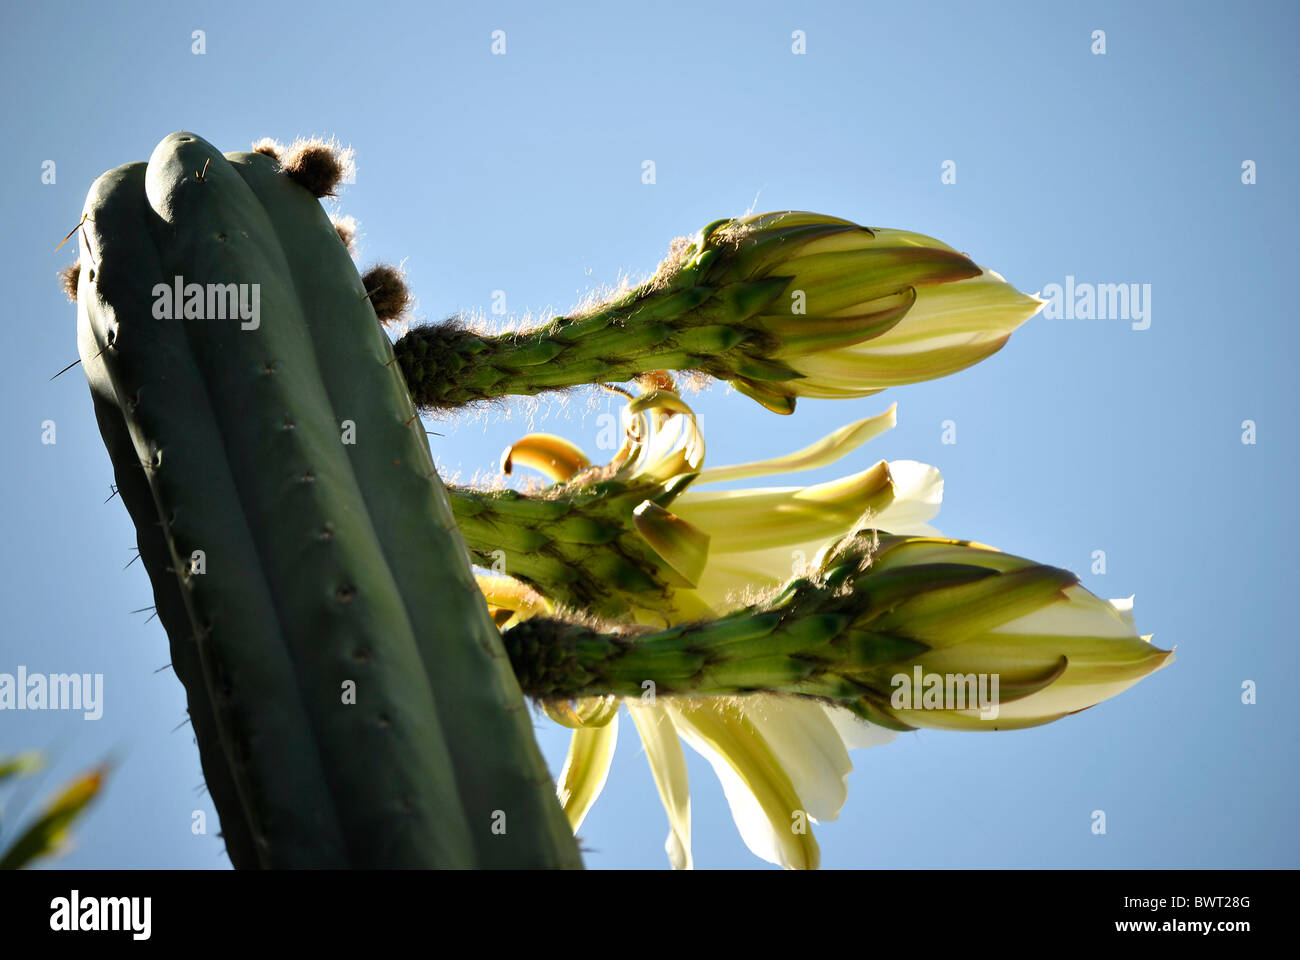 Chilean Cactus flowering Stock Photo